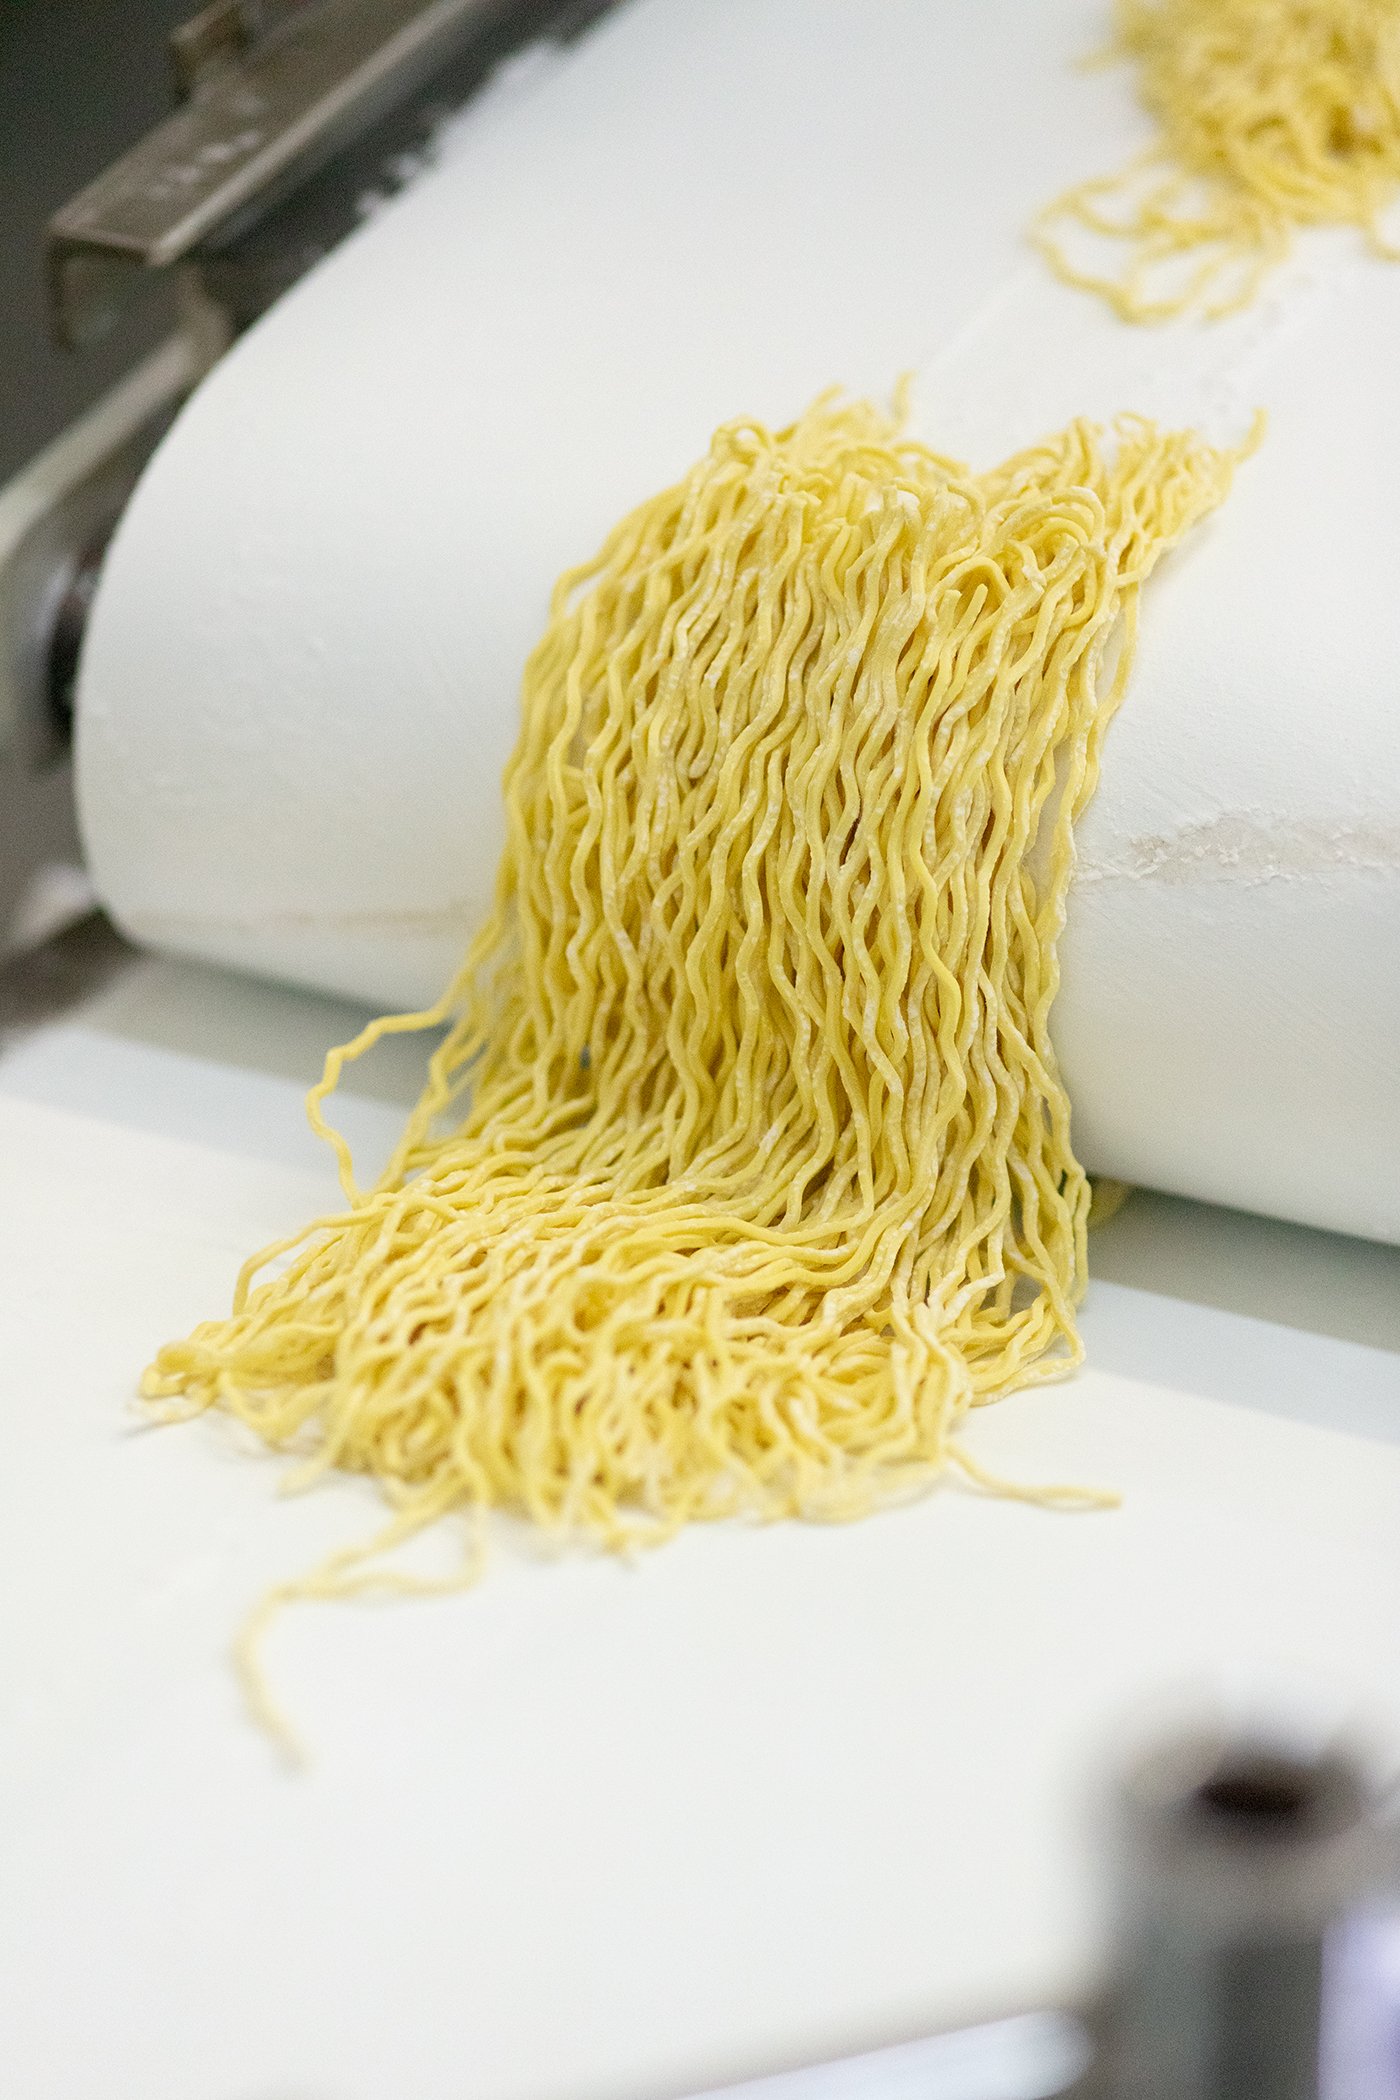 Ramen Noodle Press Kit